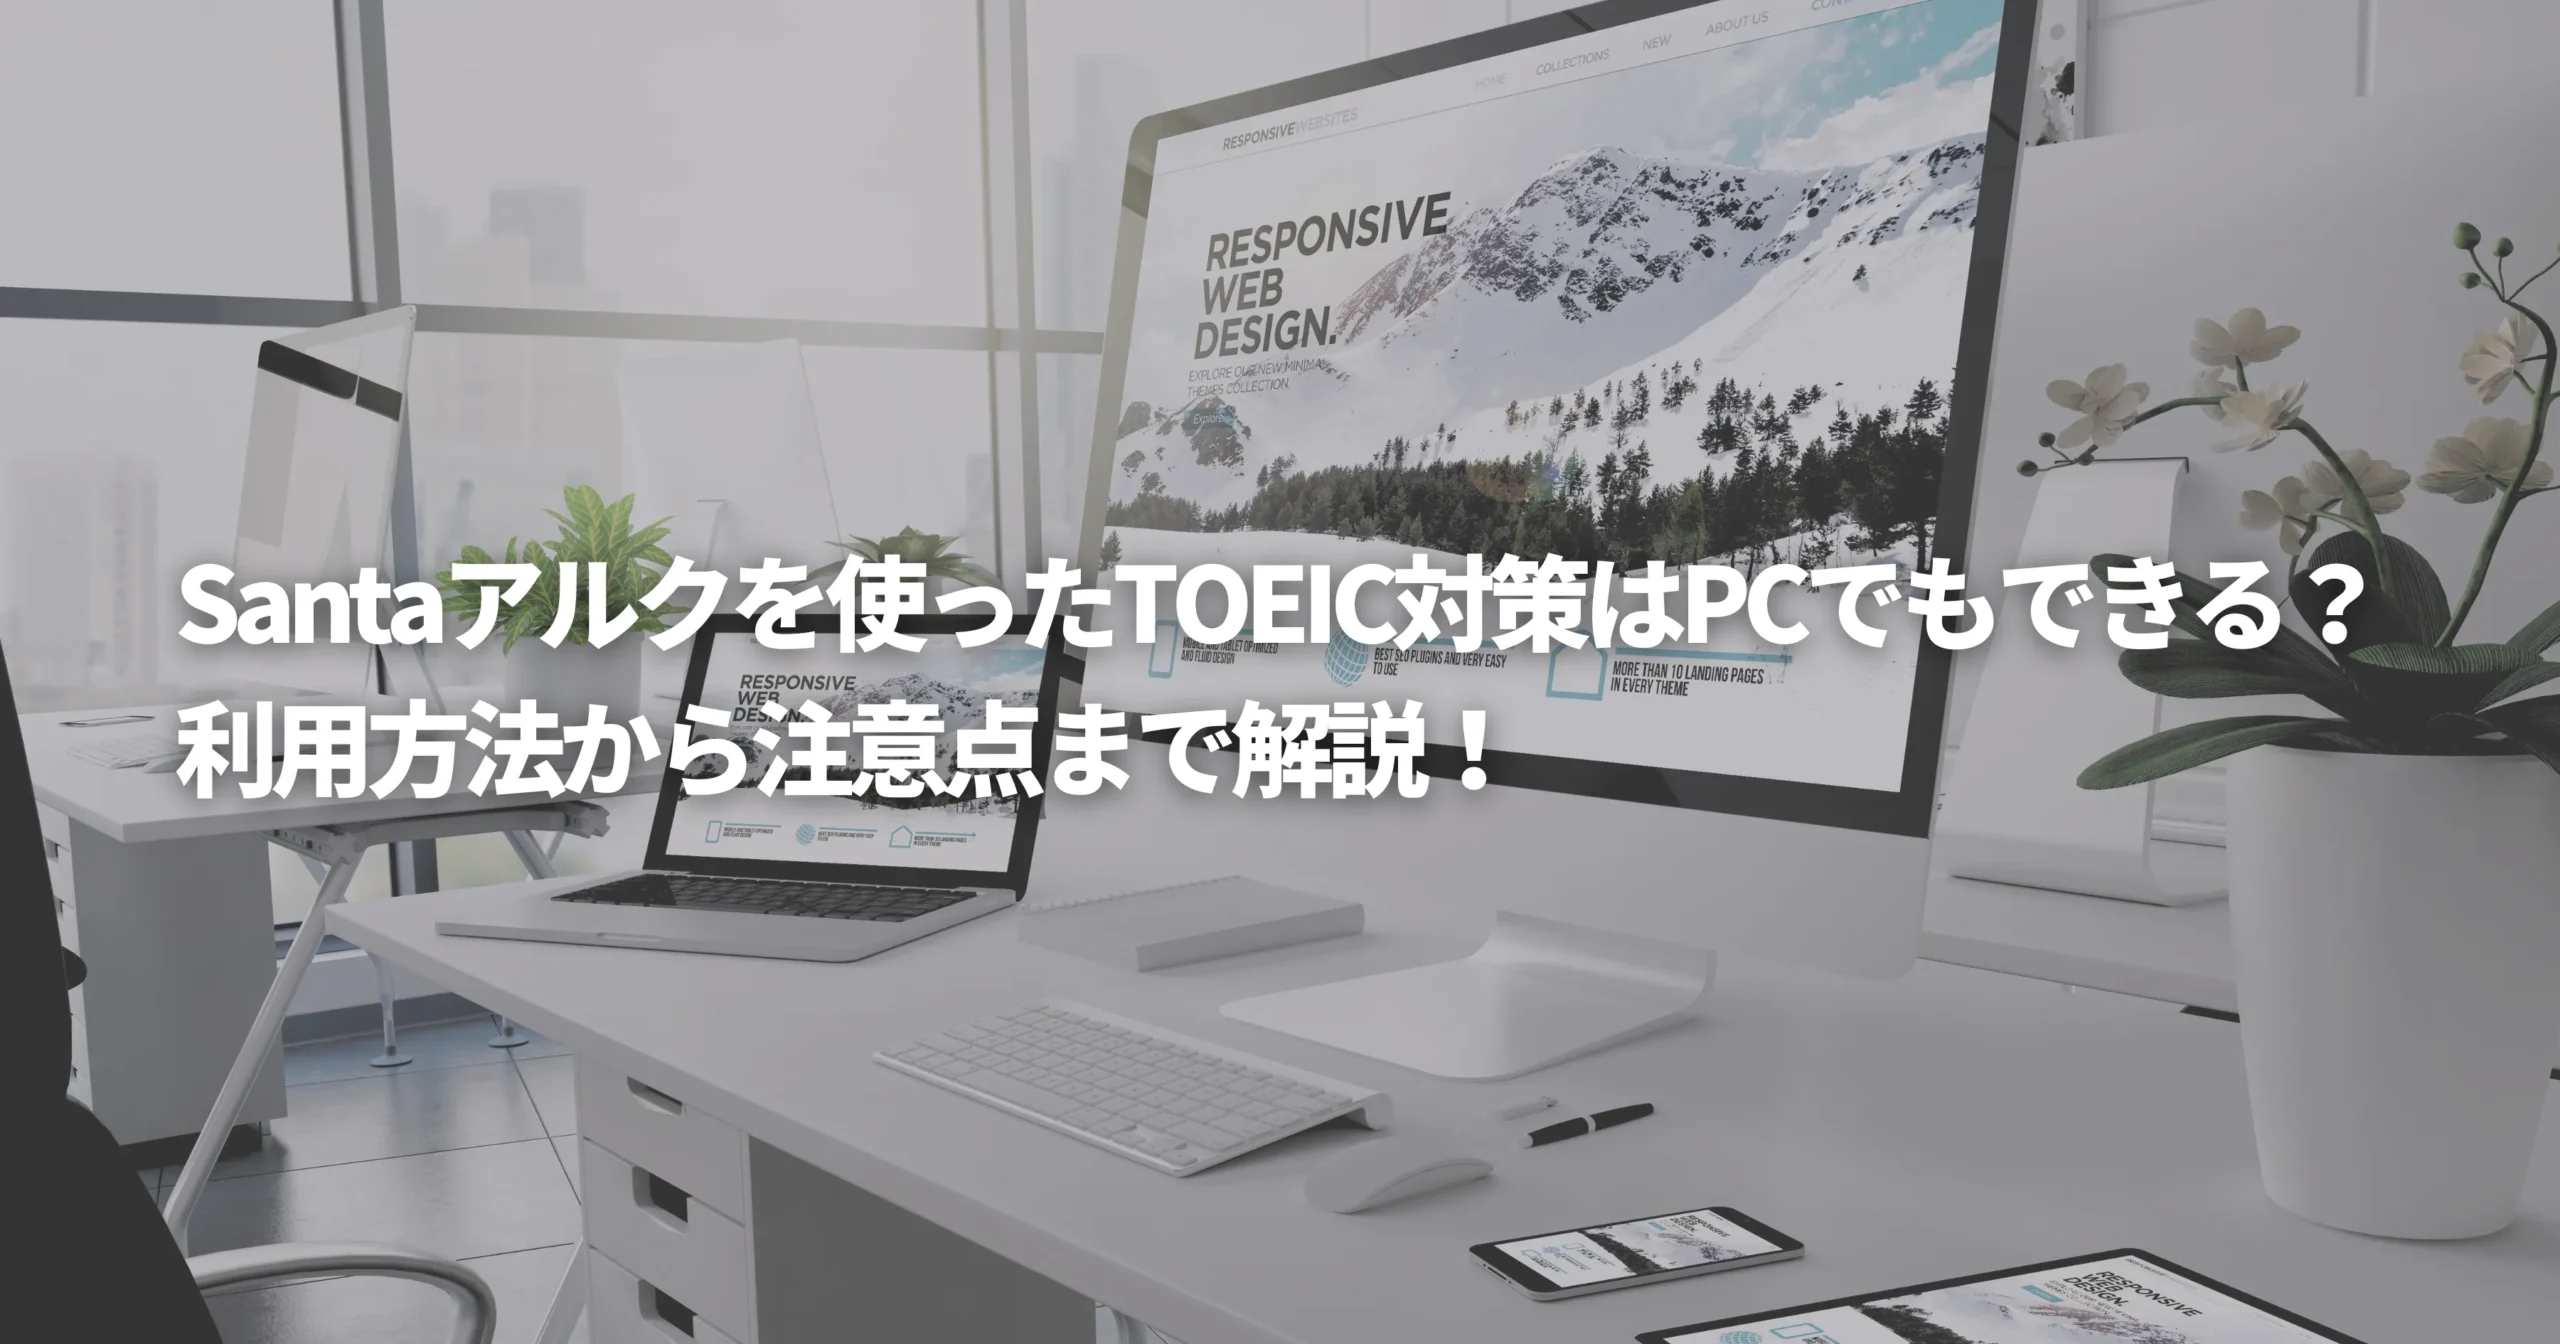 PCを使ったSantaアルクでのTOEIC対策を表した画像